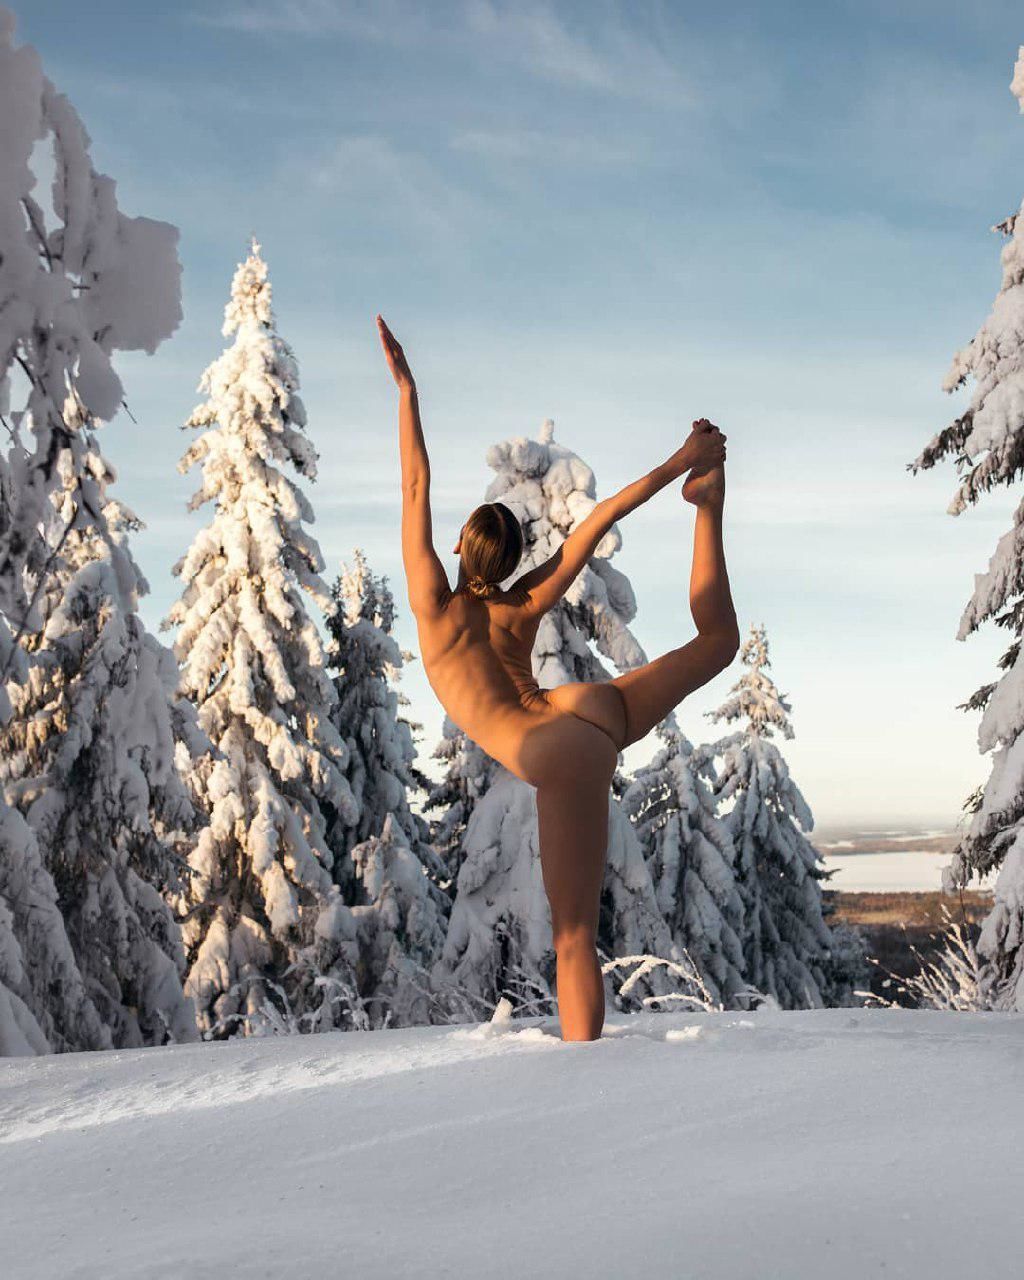 Йога-позы голышом на фоне заснеженных лесов и пляжей. Изящные фото загадочной модели в Instagram девушки